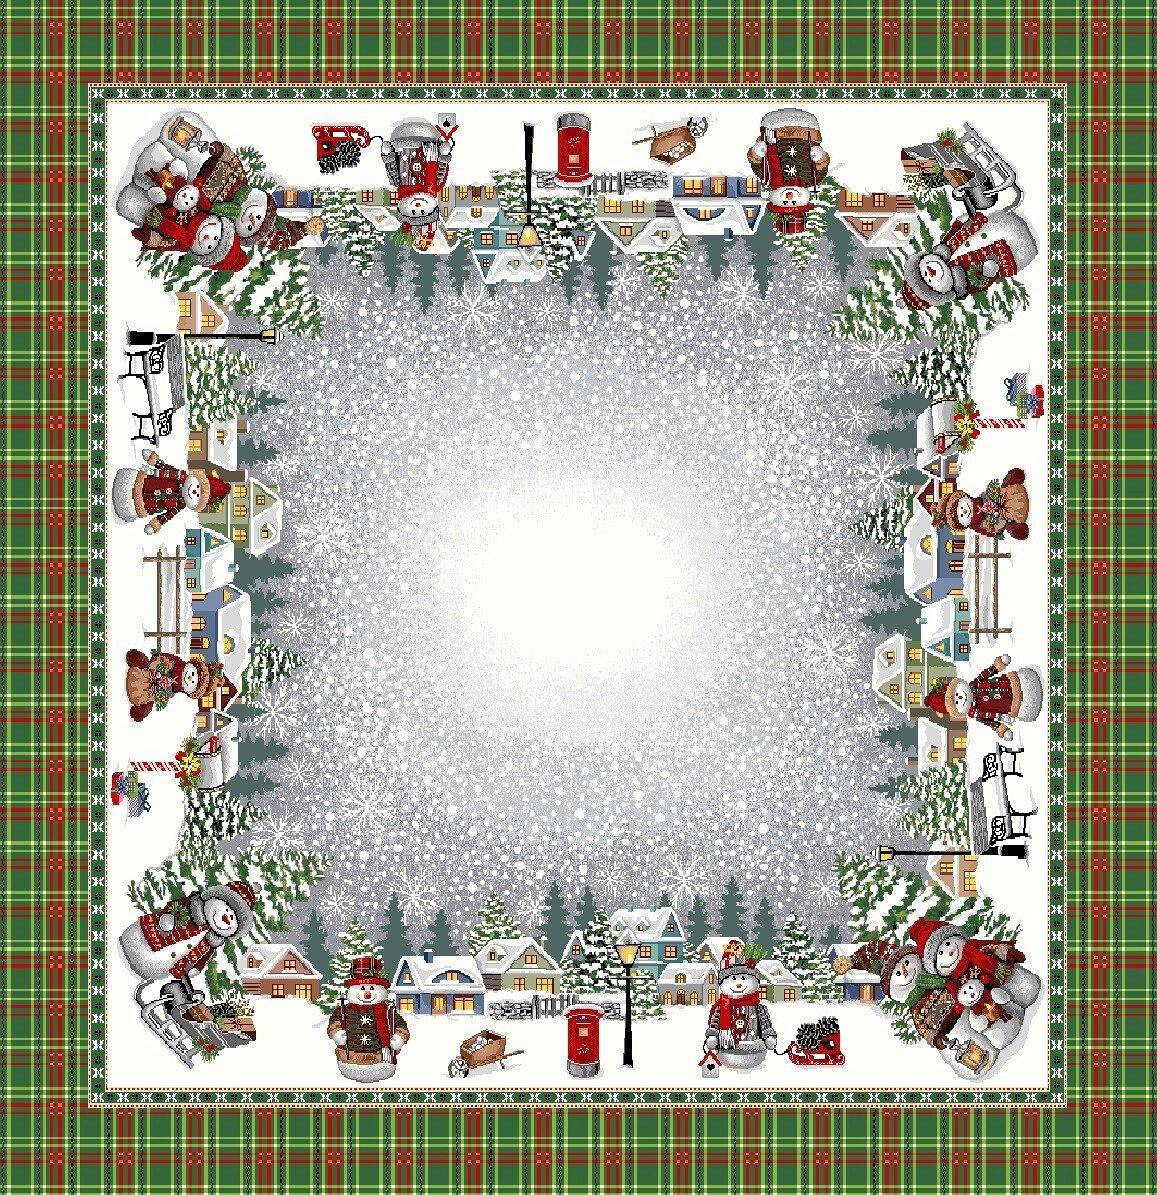 Boże Narodzenie - Panele do szycia: Obrusy, bieżniki, serwetki. / Obrus M01 P - 100x100